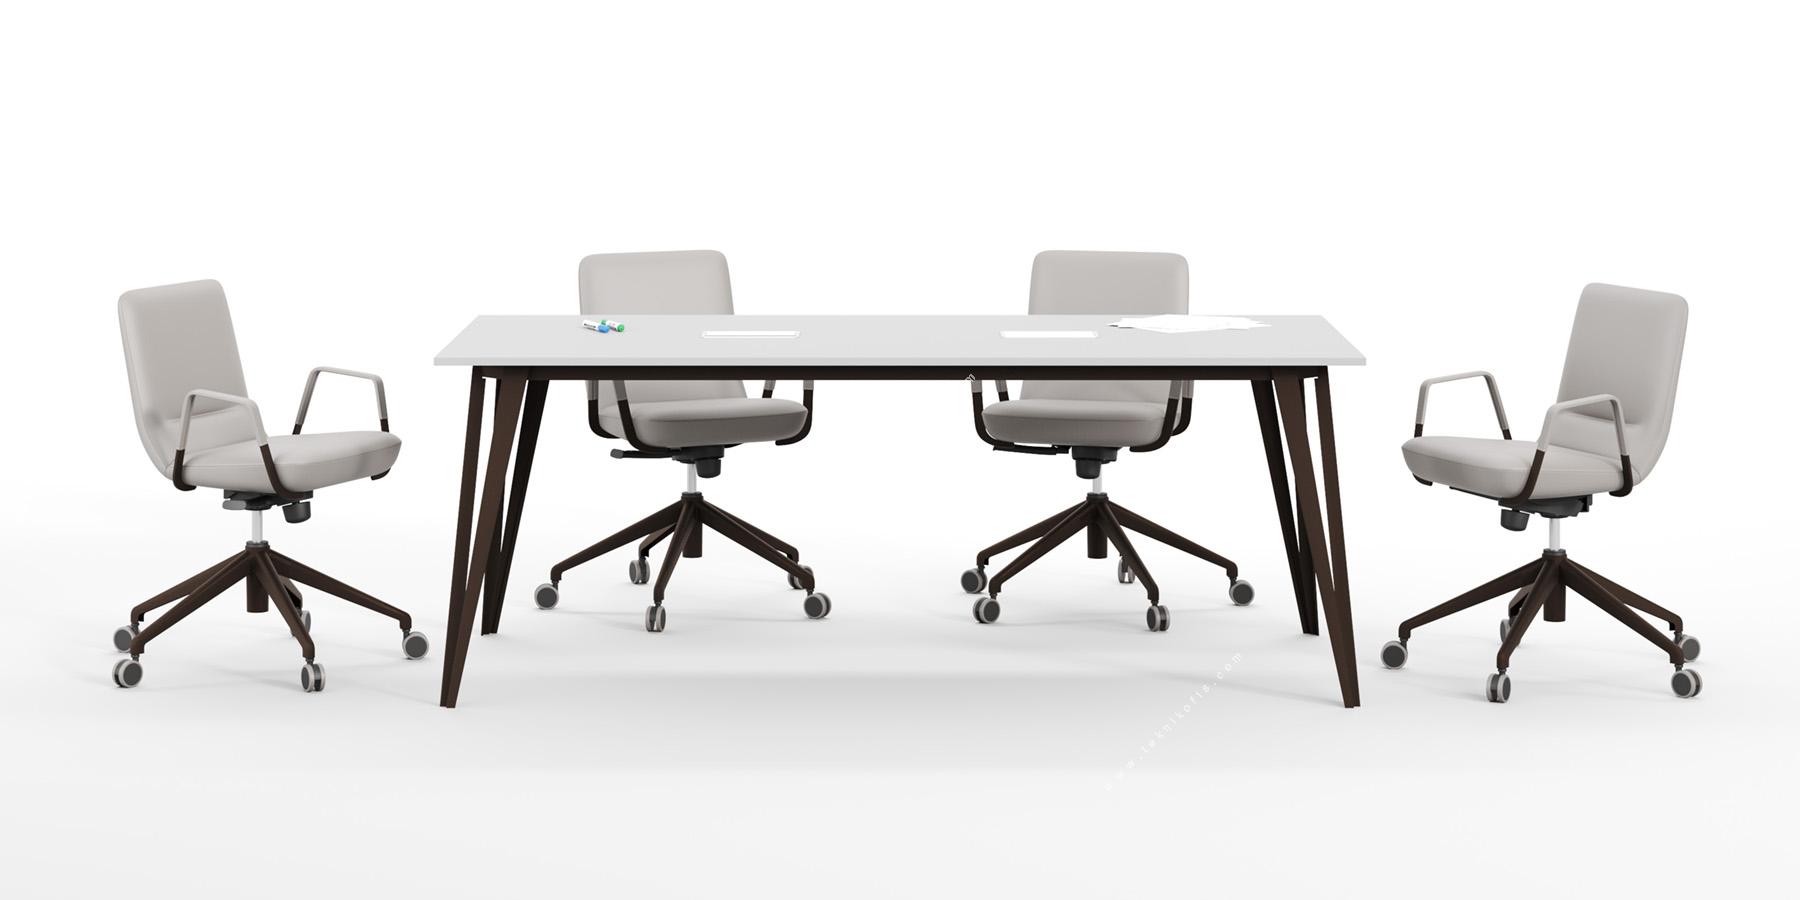 sable şık metal ayaklı toplantı masası 200cm